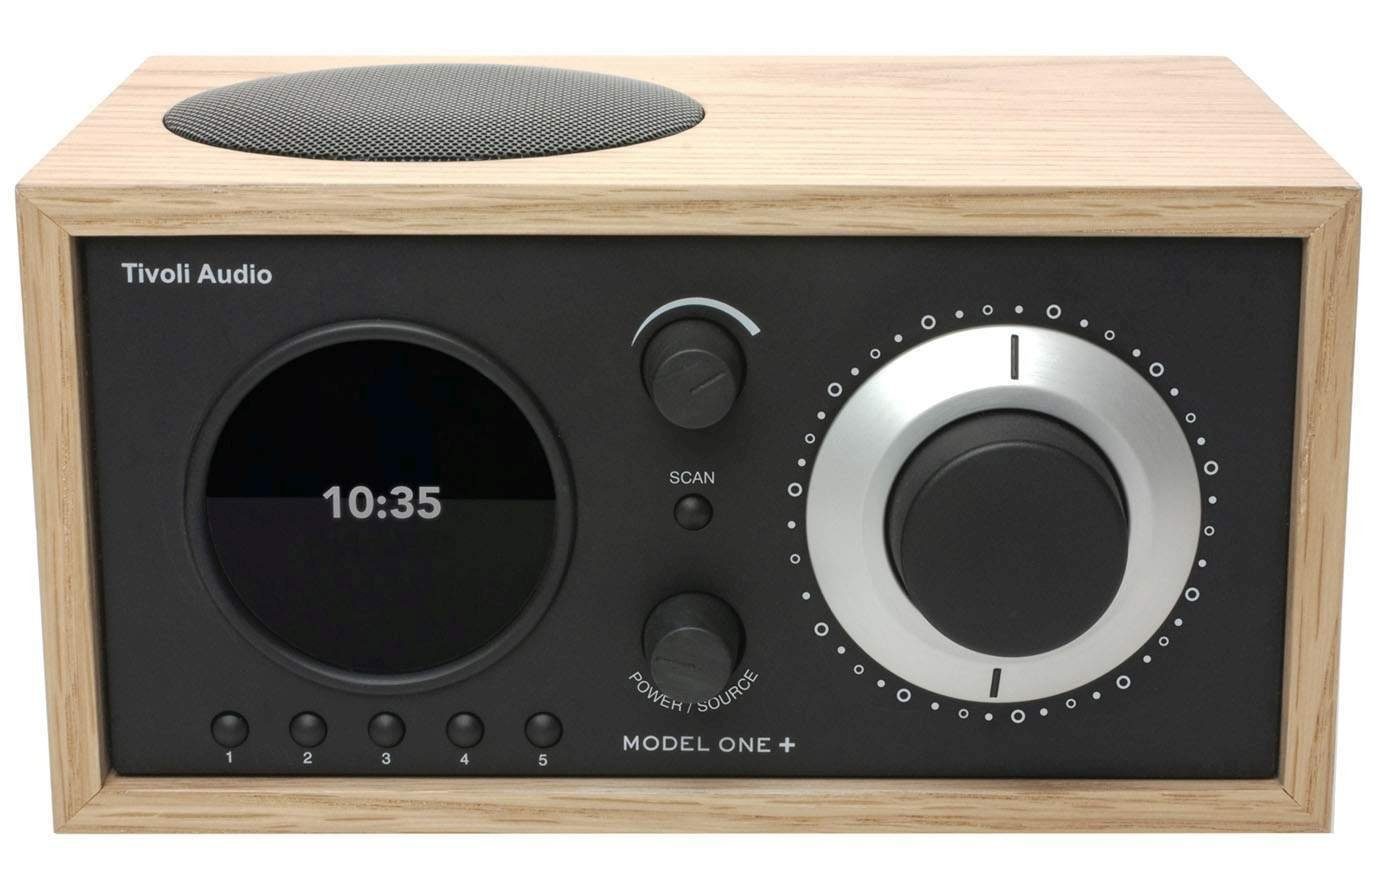 Tivoli Audio »Model ONE+ Eiche/schwarz« Digitalradio (DAB) (Digitalradio  (DAB),FM-Tuner, Wecker,Display mit Uhranzeige, Digitalradio DAB+ und  FM-Tuner, Bluetooth-Empfänger, Fernbedienung) online kaufen | OTTO